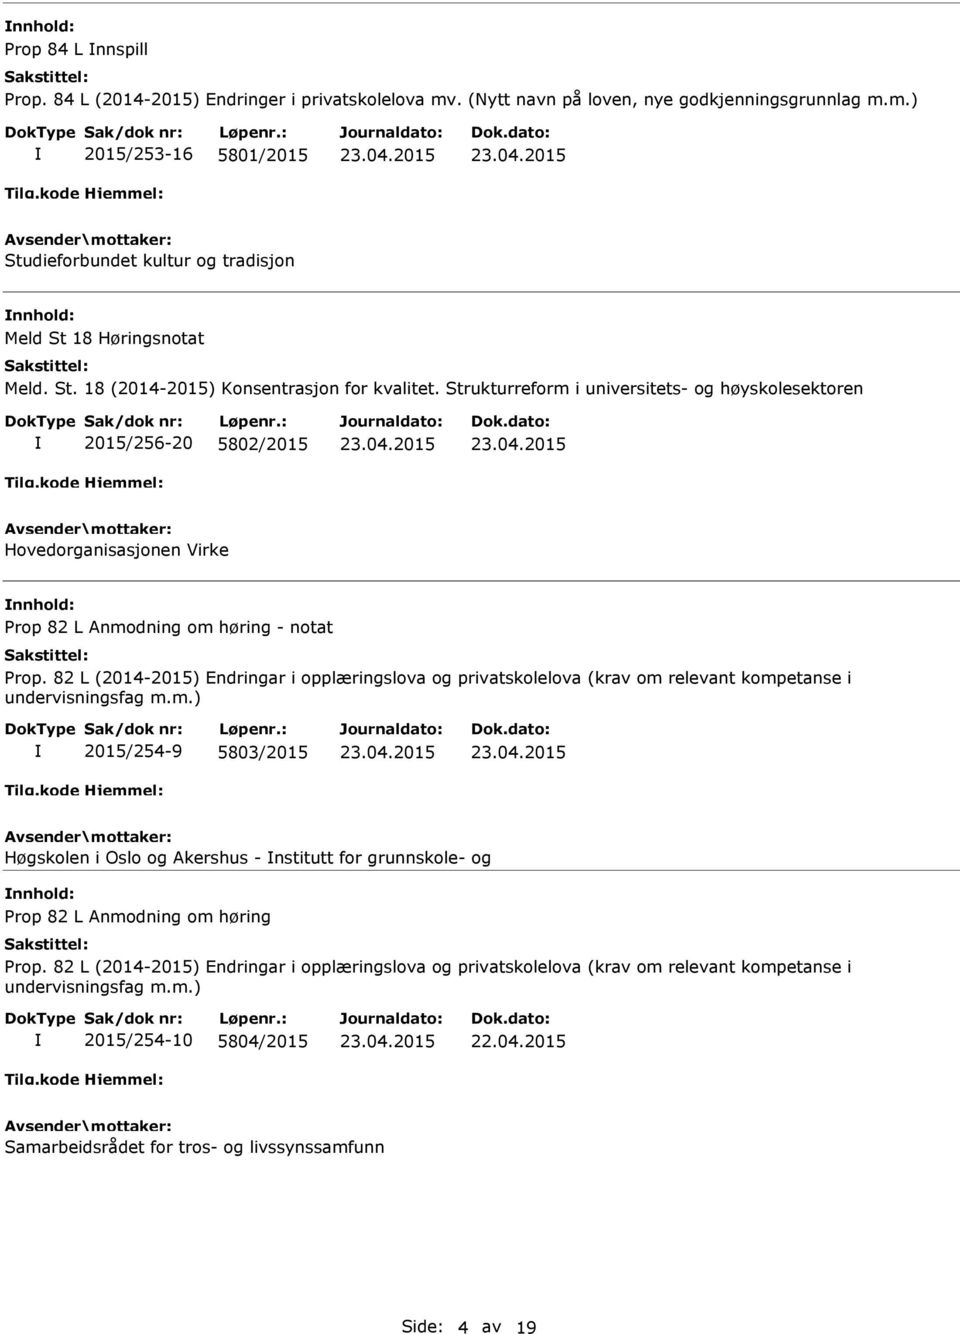 82 L (2014-2015) Endringar i opplæringslova og privatskolelova (krav om relevant kompetanse i undervisningsfag m.m.) 2015/254-9 5803/2015 Høgskolen i Oslo og Akershus - nstitutt for grunnskole- og nnhold: Prop 82 L Anmodning om høring Prop.